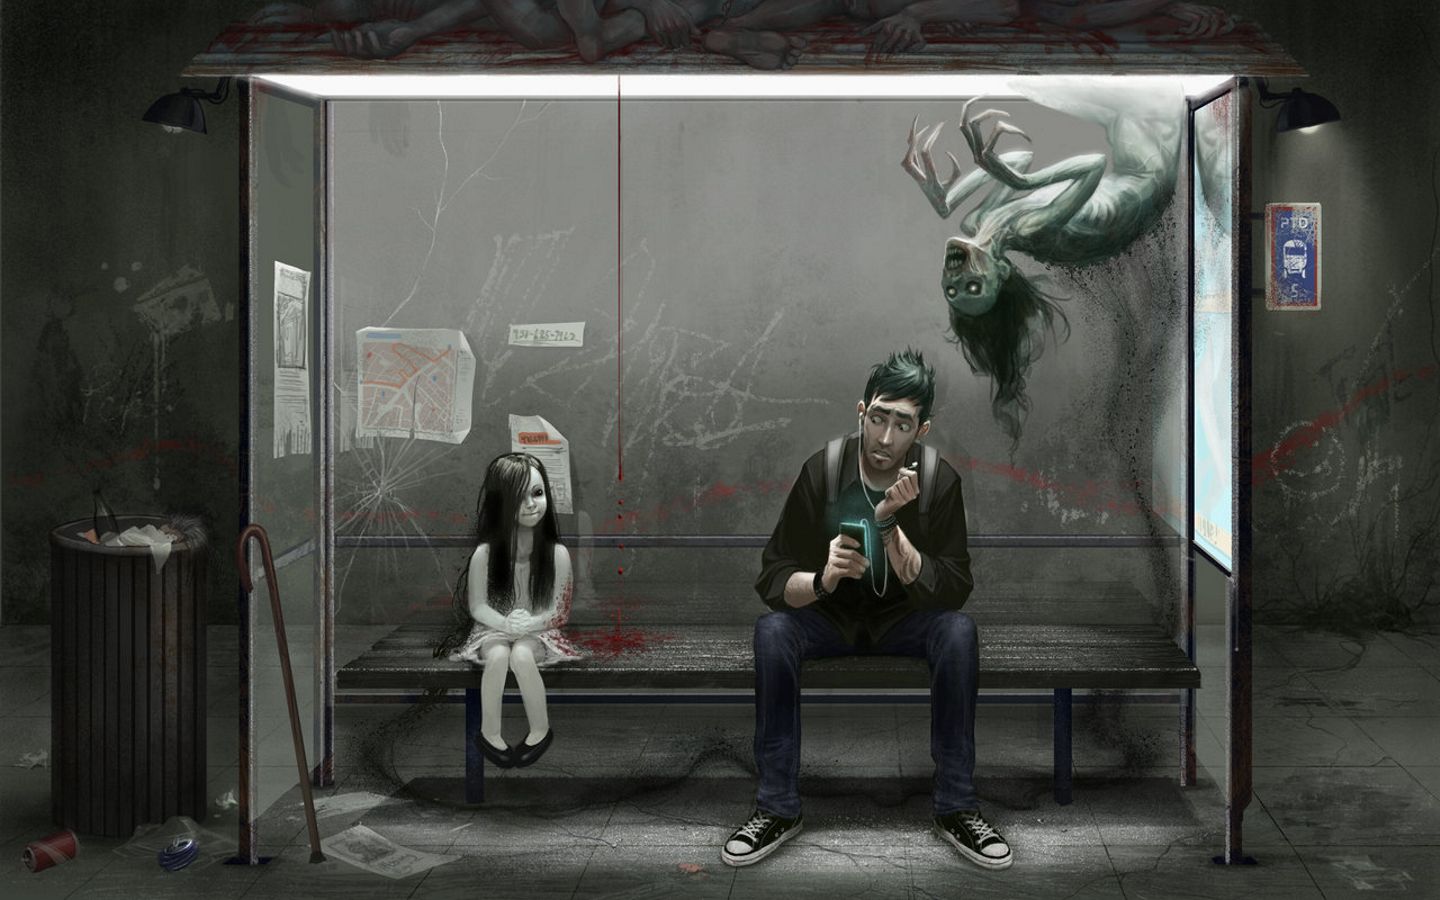 на проклятой автобусной остановке регулярно пропадают пассажиры, картинка с зомби